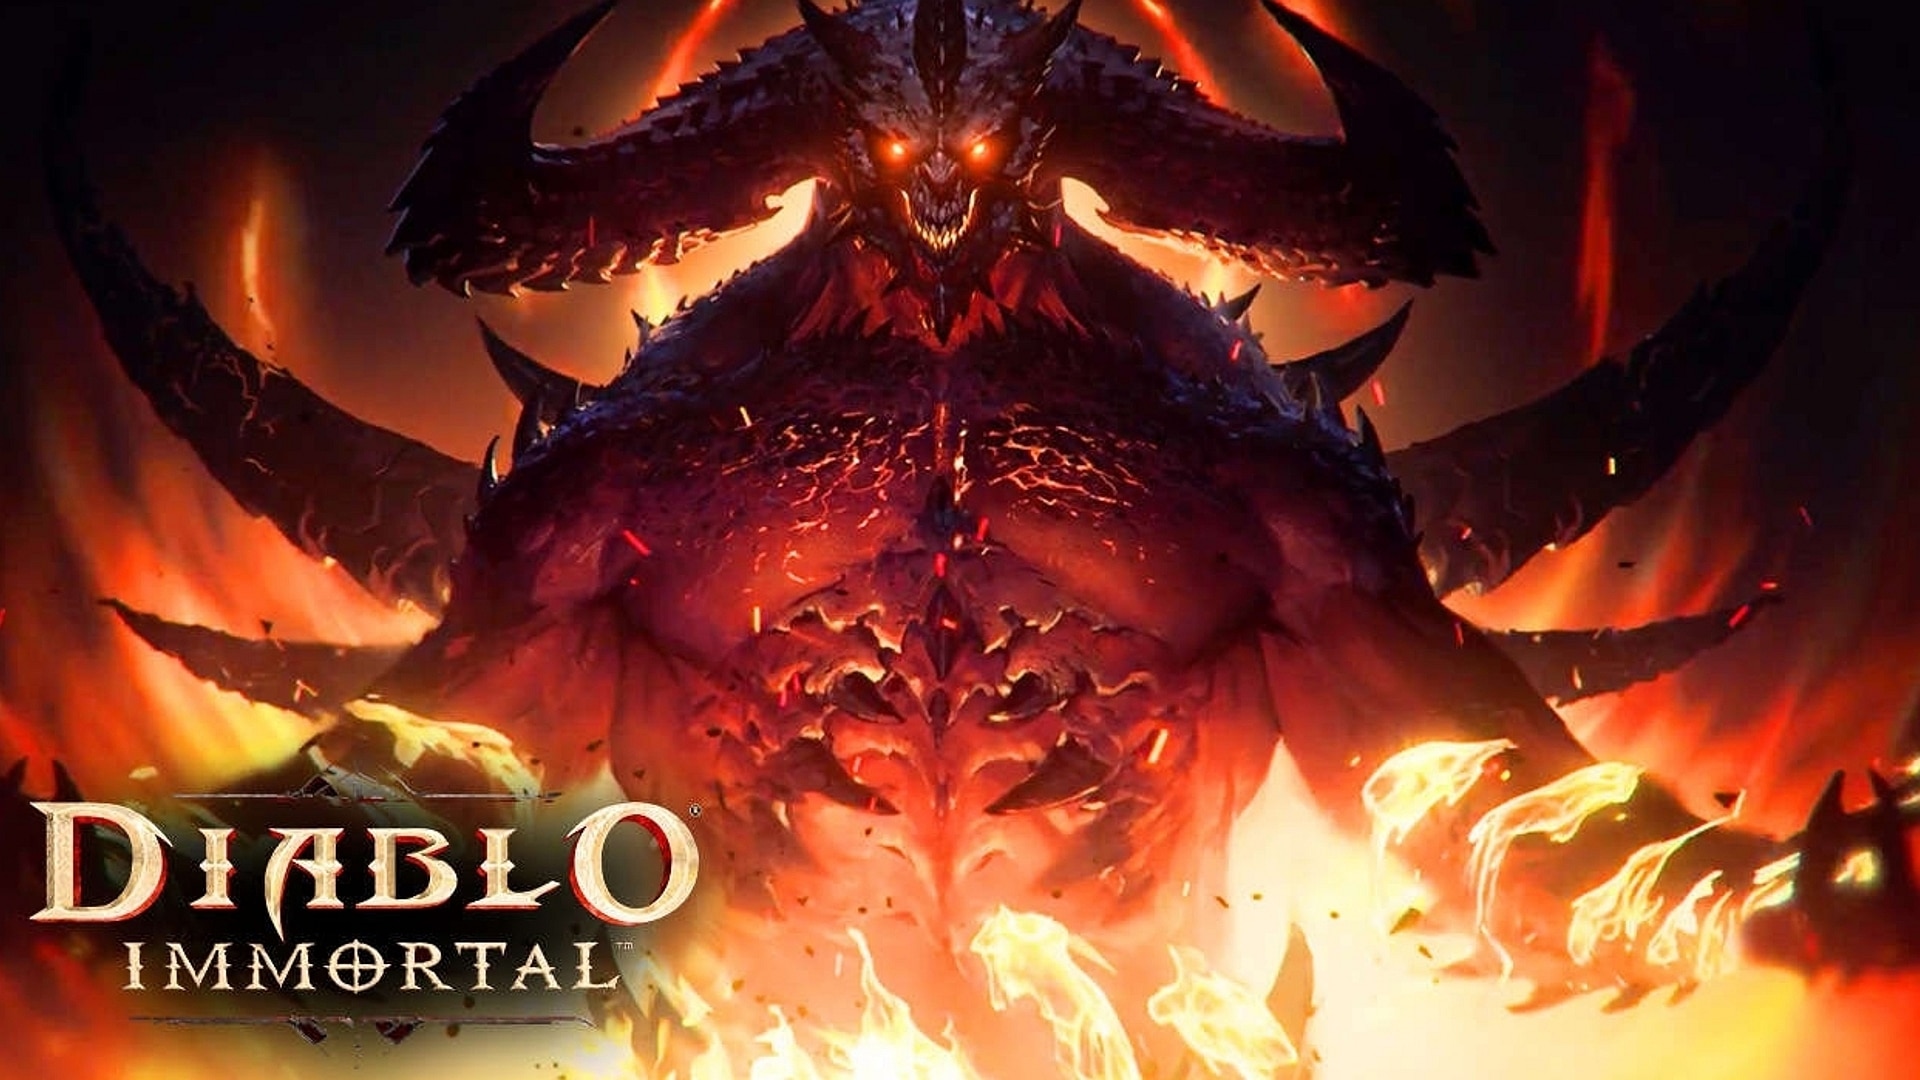 Diablo Immortal Mobile & PC Release Date Announced Video Games Blogger